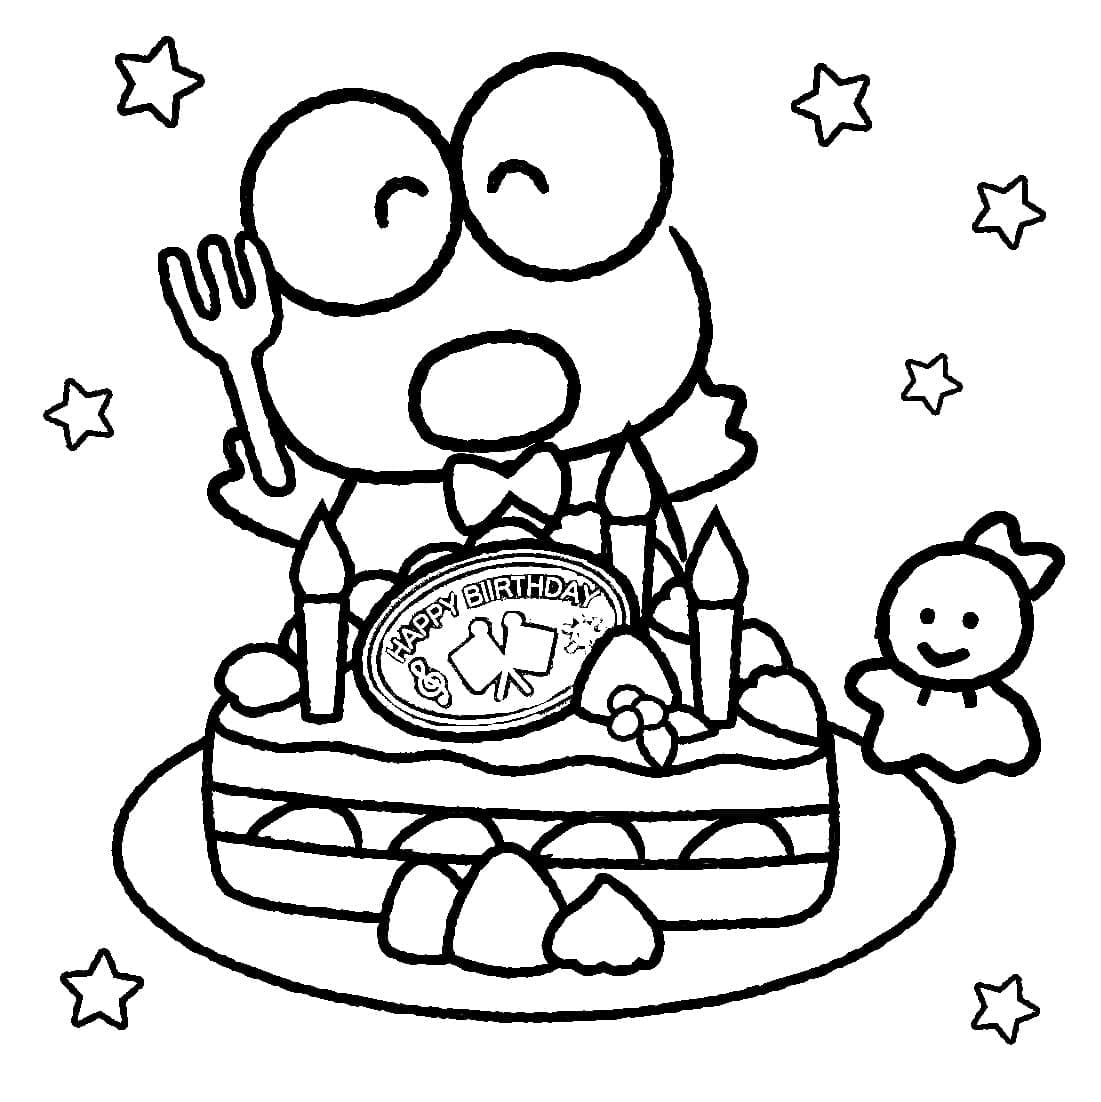 desenho de keroppi com bolo de aniversario para colorir